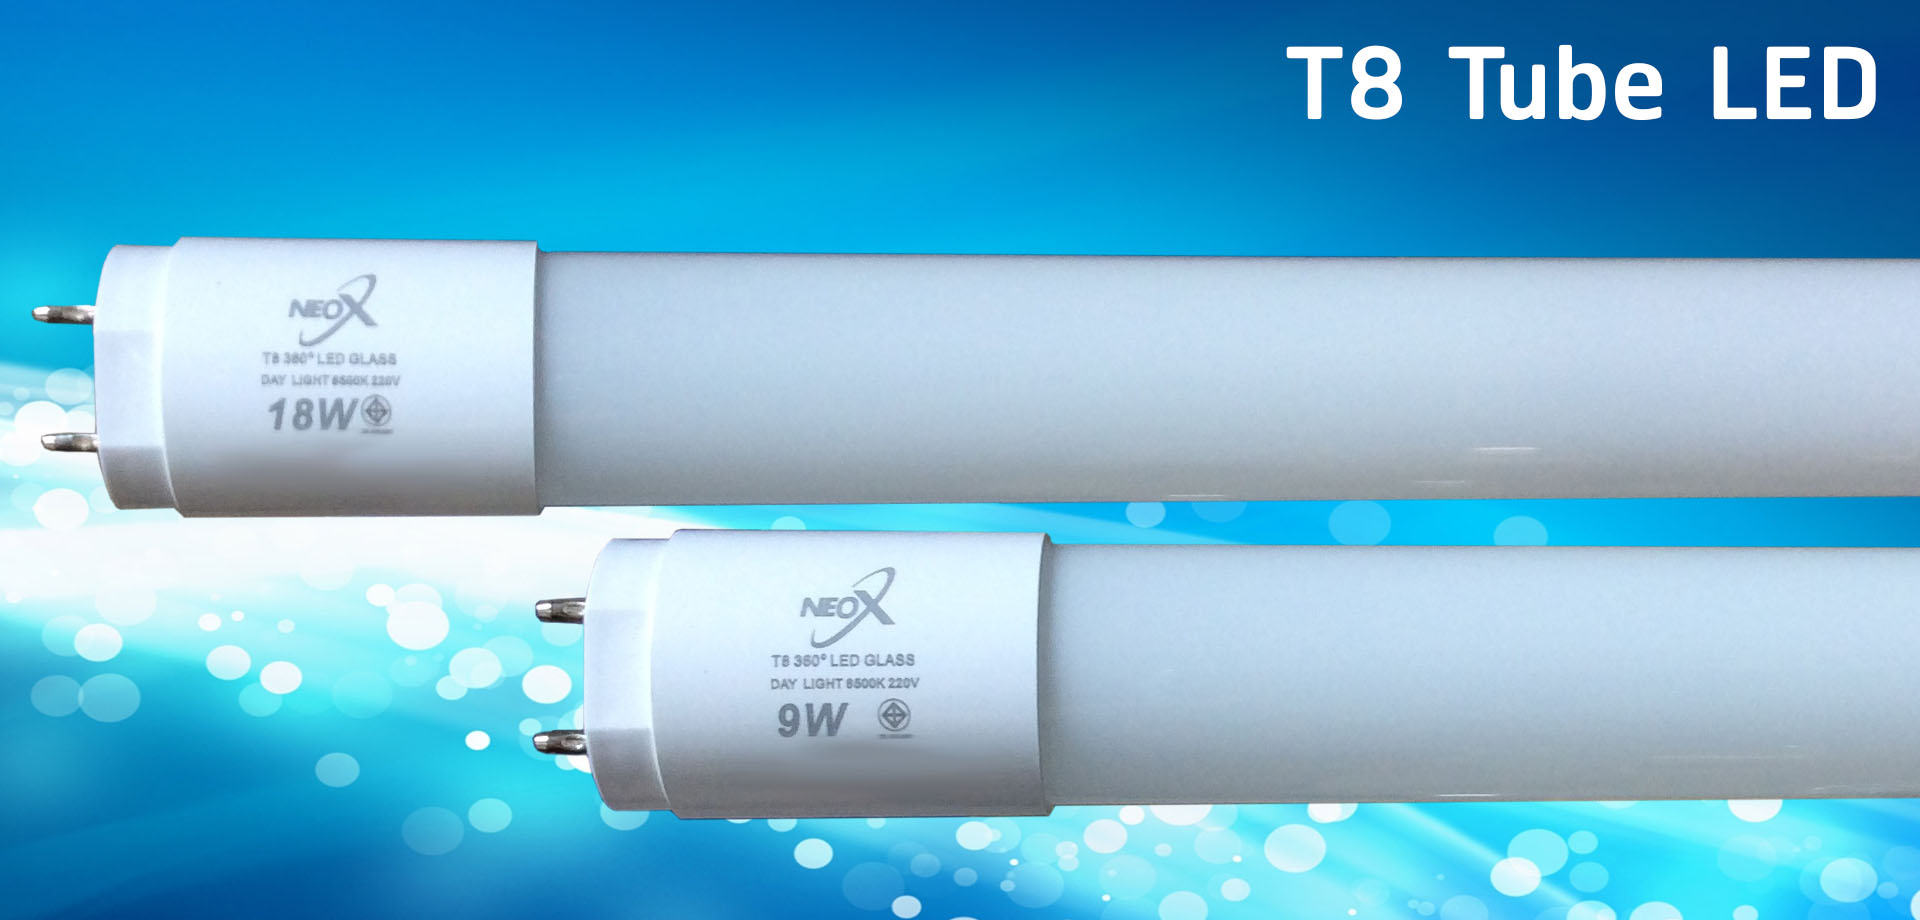 NEO X Bulb LED Product T8 Slide Edit